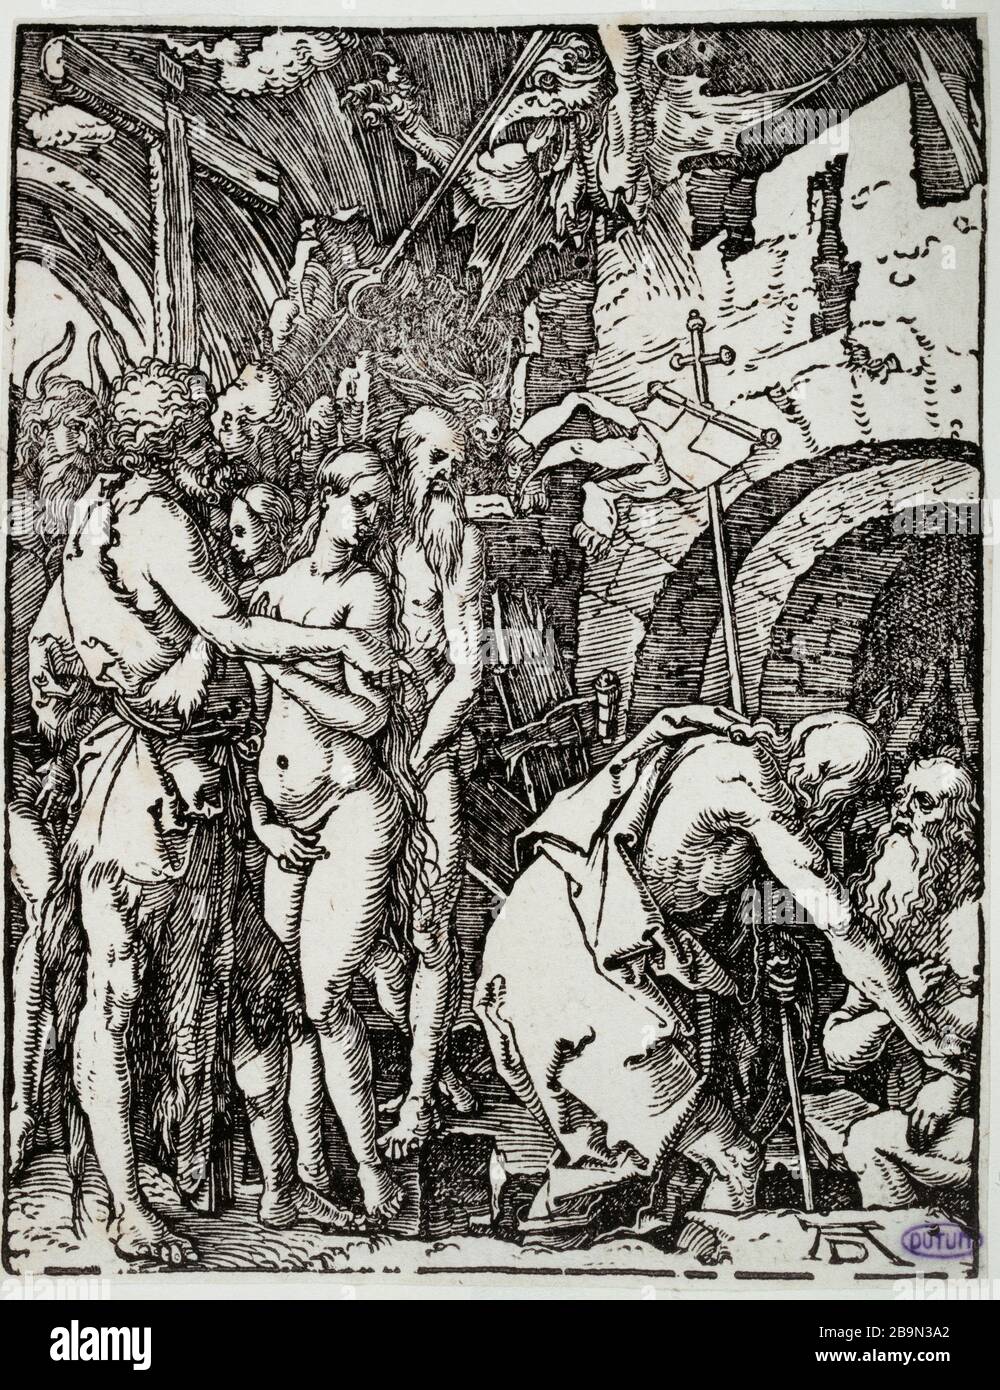 Piccola Passione sul legno: Cristo nel limbo (Bartsch 41) Albrecht Dürer (1471-1528). La Petite Passion sur bois : le Christ aux Limbes (Bartsch 41). 1509. Musée des Beaux-Arts de la Ville de Paris, Petit Palais. Foto Stock